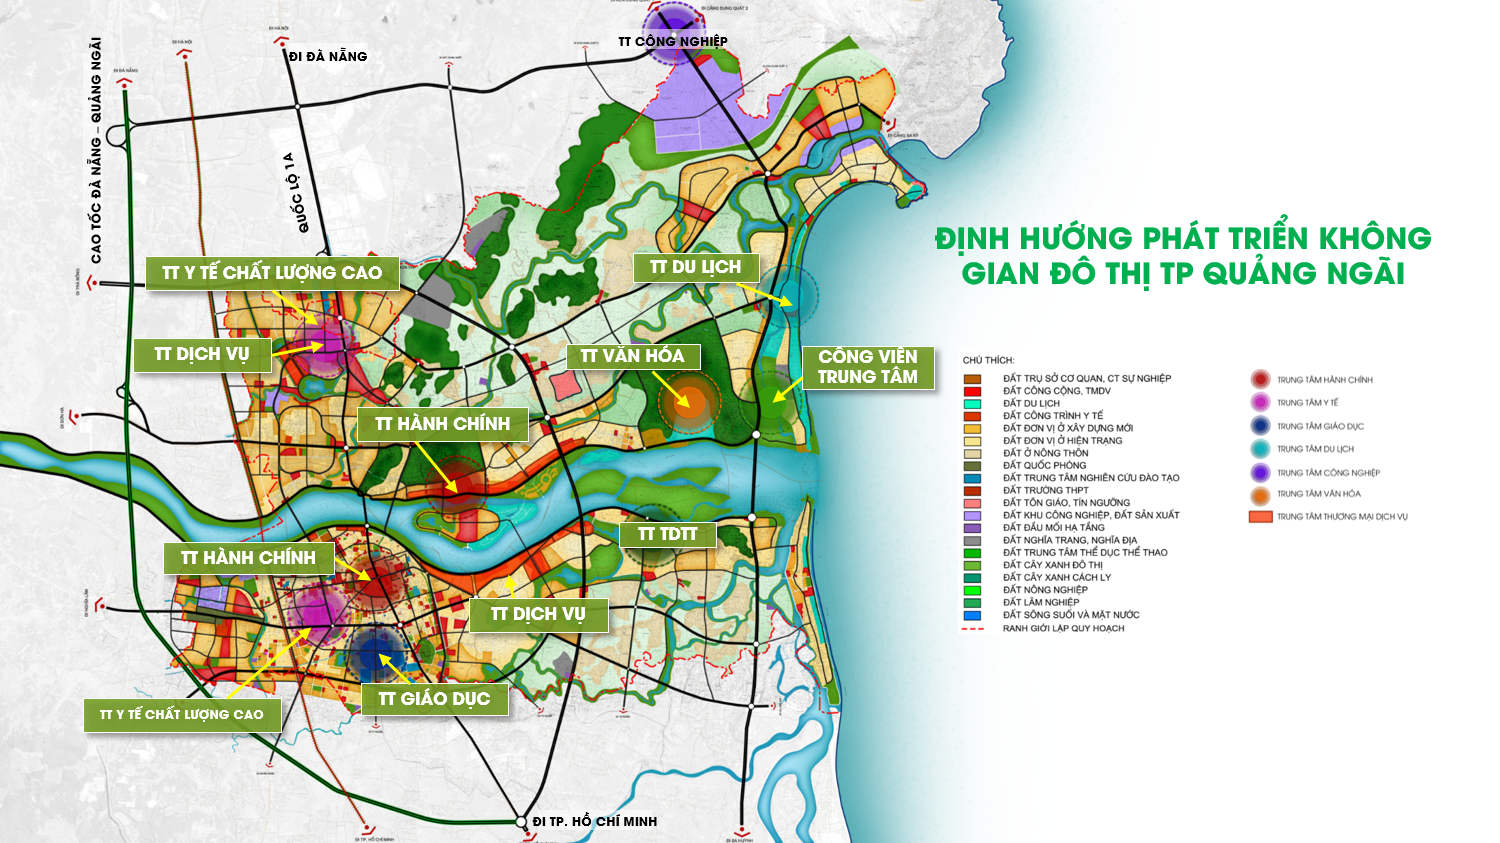 Quy hoạch đất Quảng Ngãi năm 2021 sẽ mang đến các kế hoạch phát triển bền vững cho địa phương này. Những dự án hấp dẫn sẽ được triển khai, tạo nên một môi trường kinh doanh và đầu tư thu hút nhiều người muốn định cư tại Quảng Ngãi.